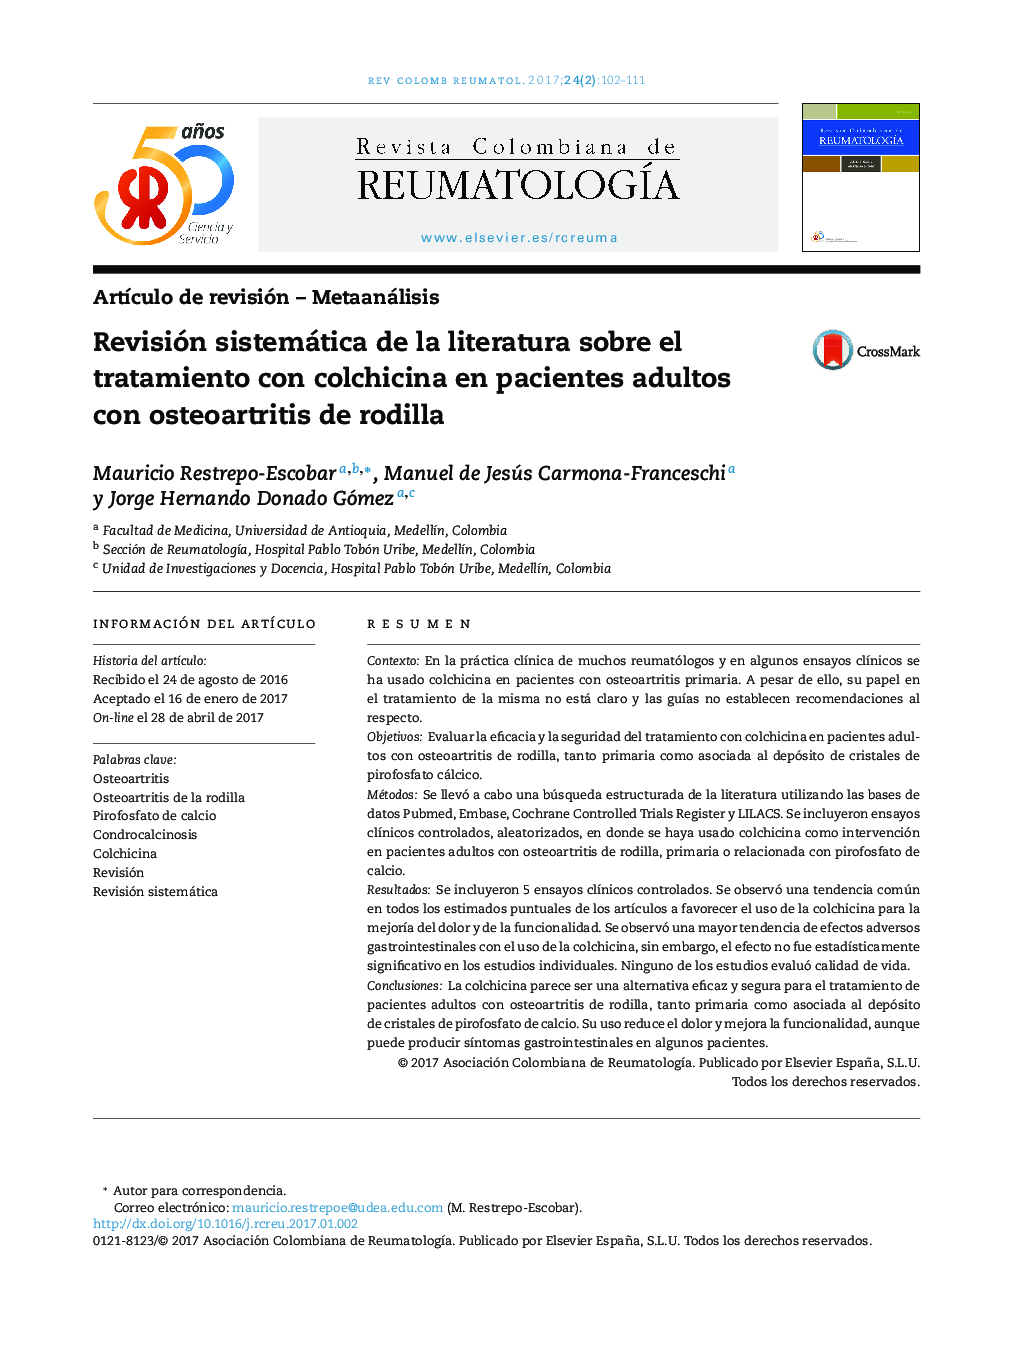 بررسی سیستماتیک ادبیات مربوط به درمان کلشیسین در بیماران بزرگسال مبتلا به استئوآرتریت زانو 